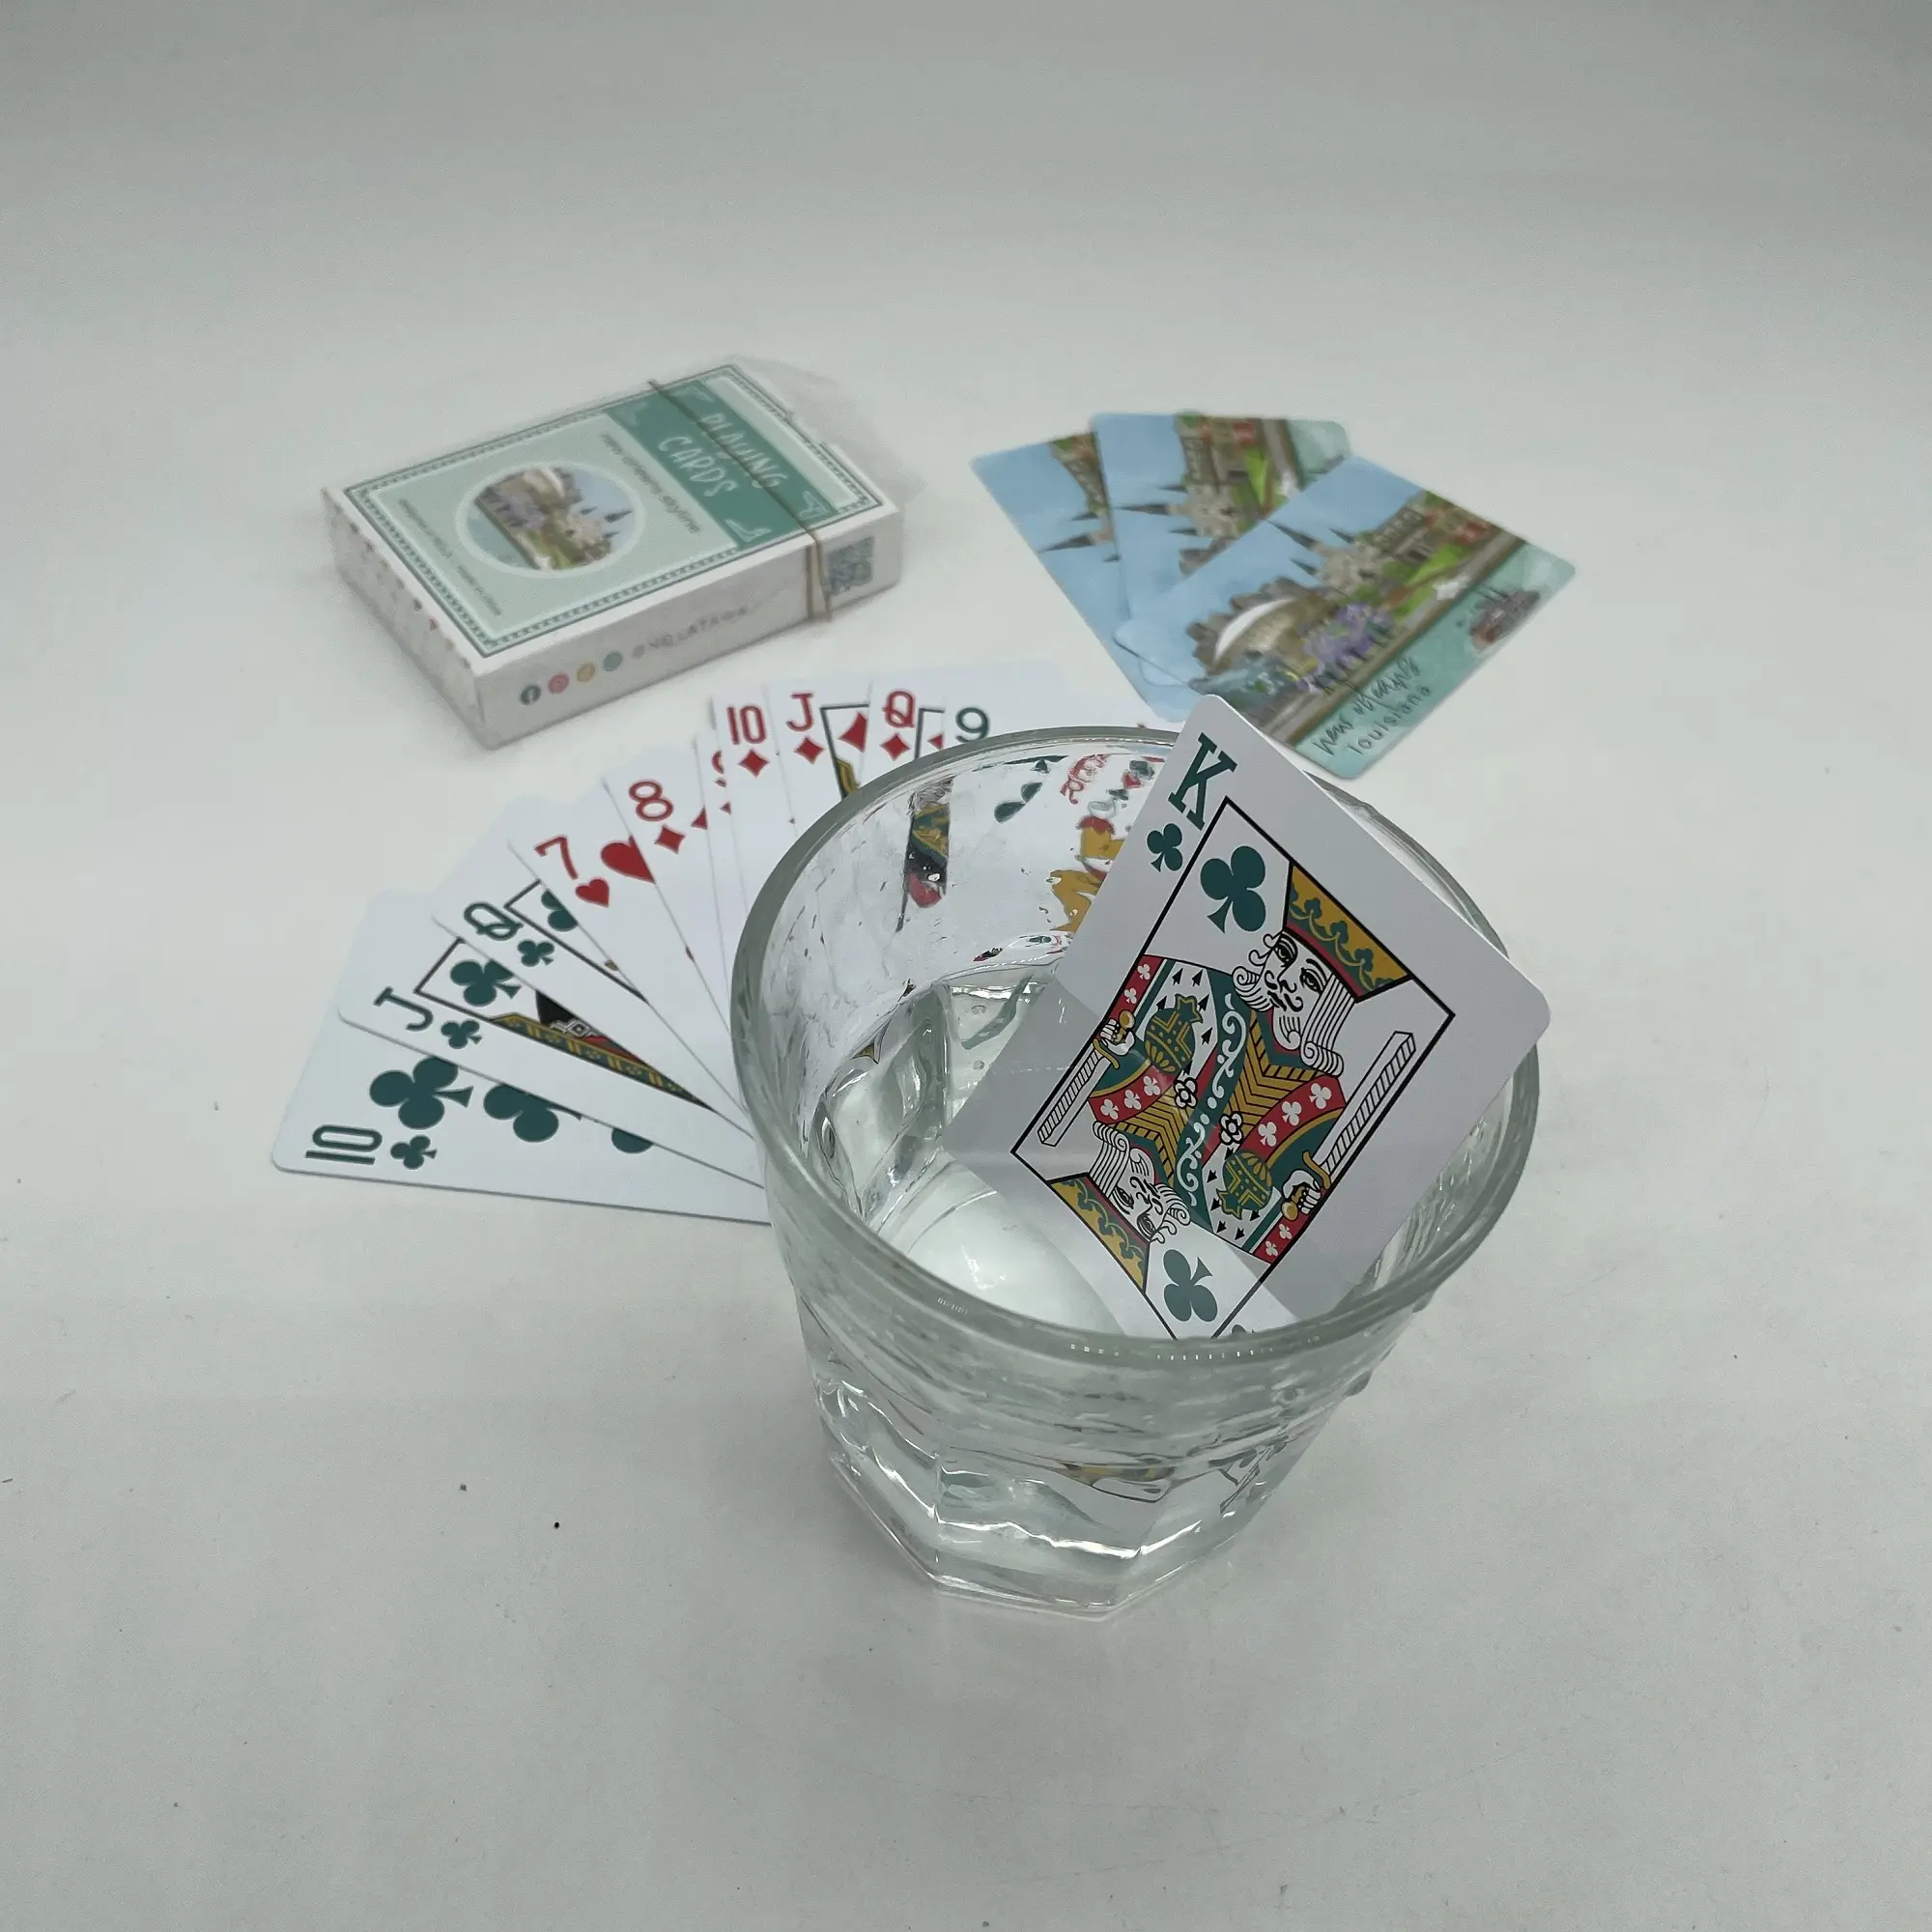 Beste Kwaliteit Custom Ontwerp Premium Speelkaarten Pvc Pokerkaarten 100 Waterdicht Plastic Kaartspel Poker